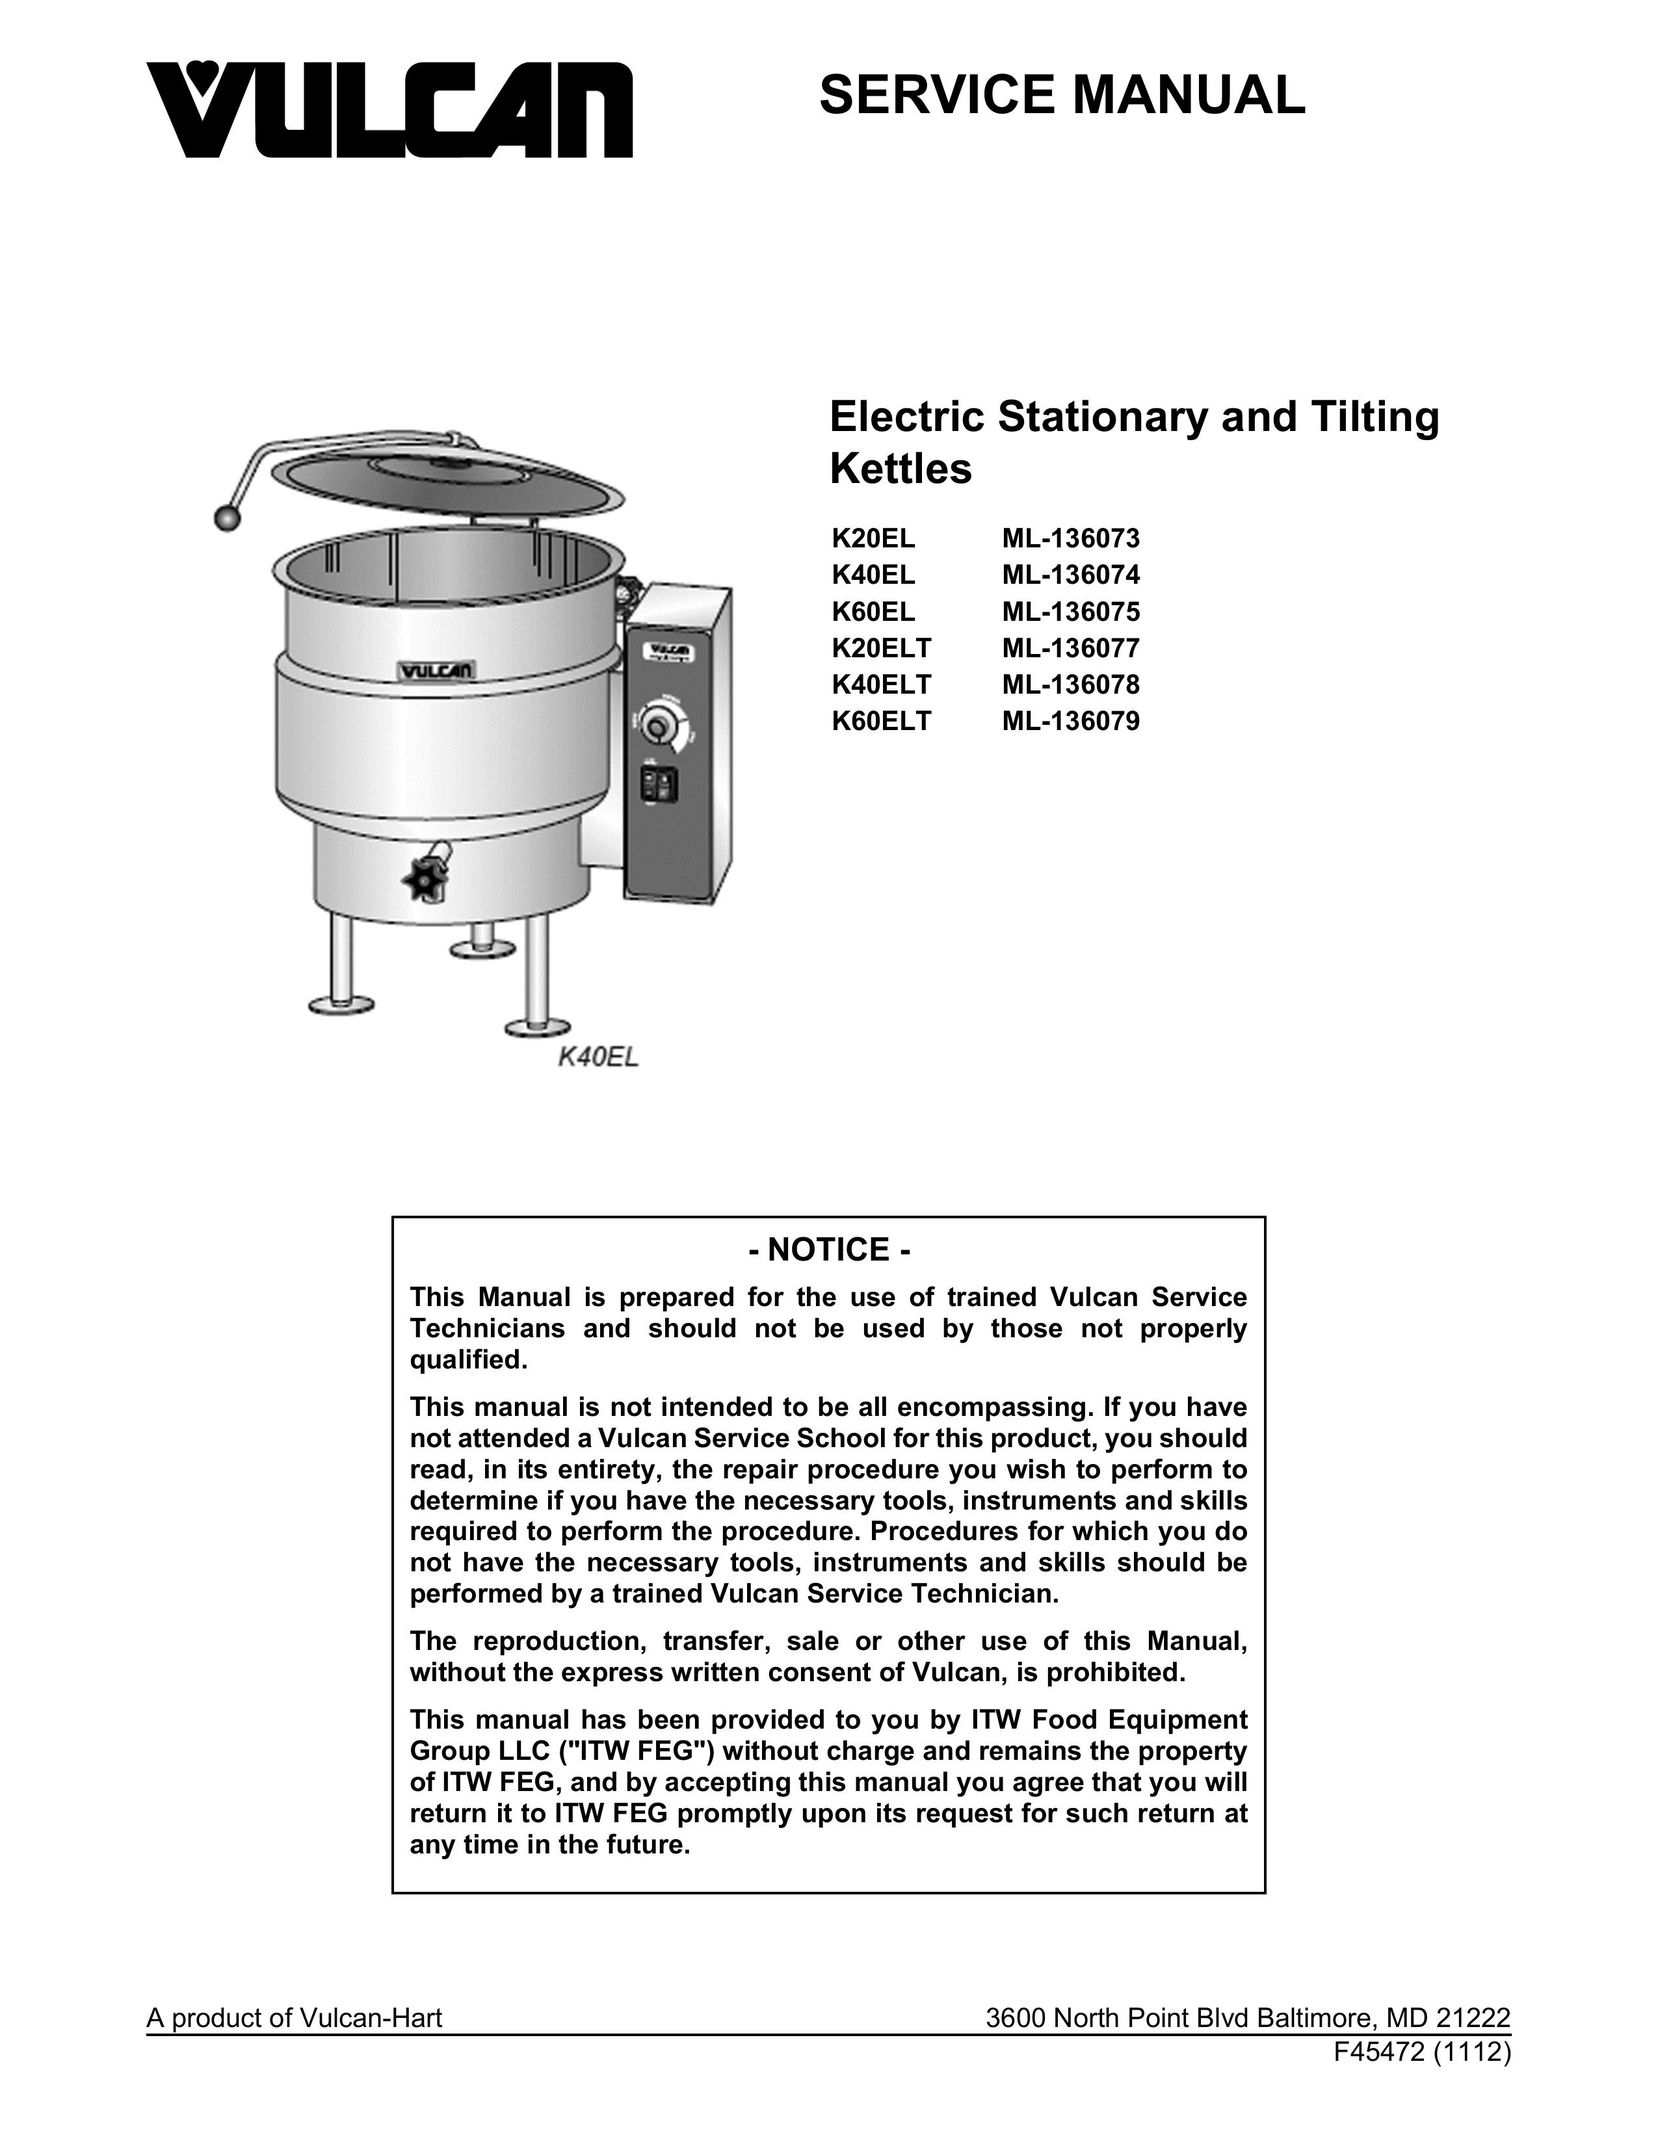 Vulcan-Hart K20EL ML-136073 Hot Beverage Maker User Manual